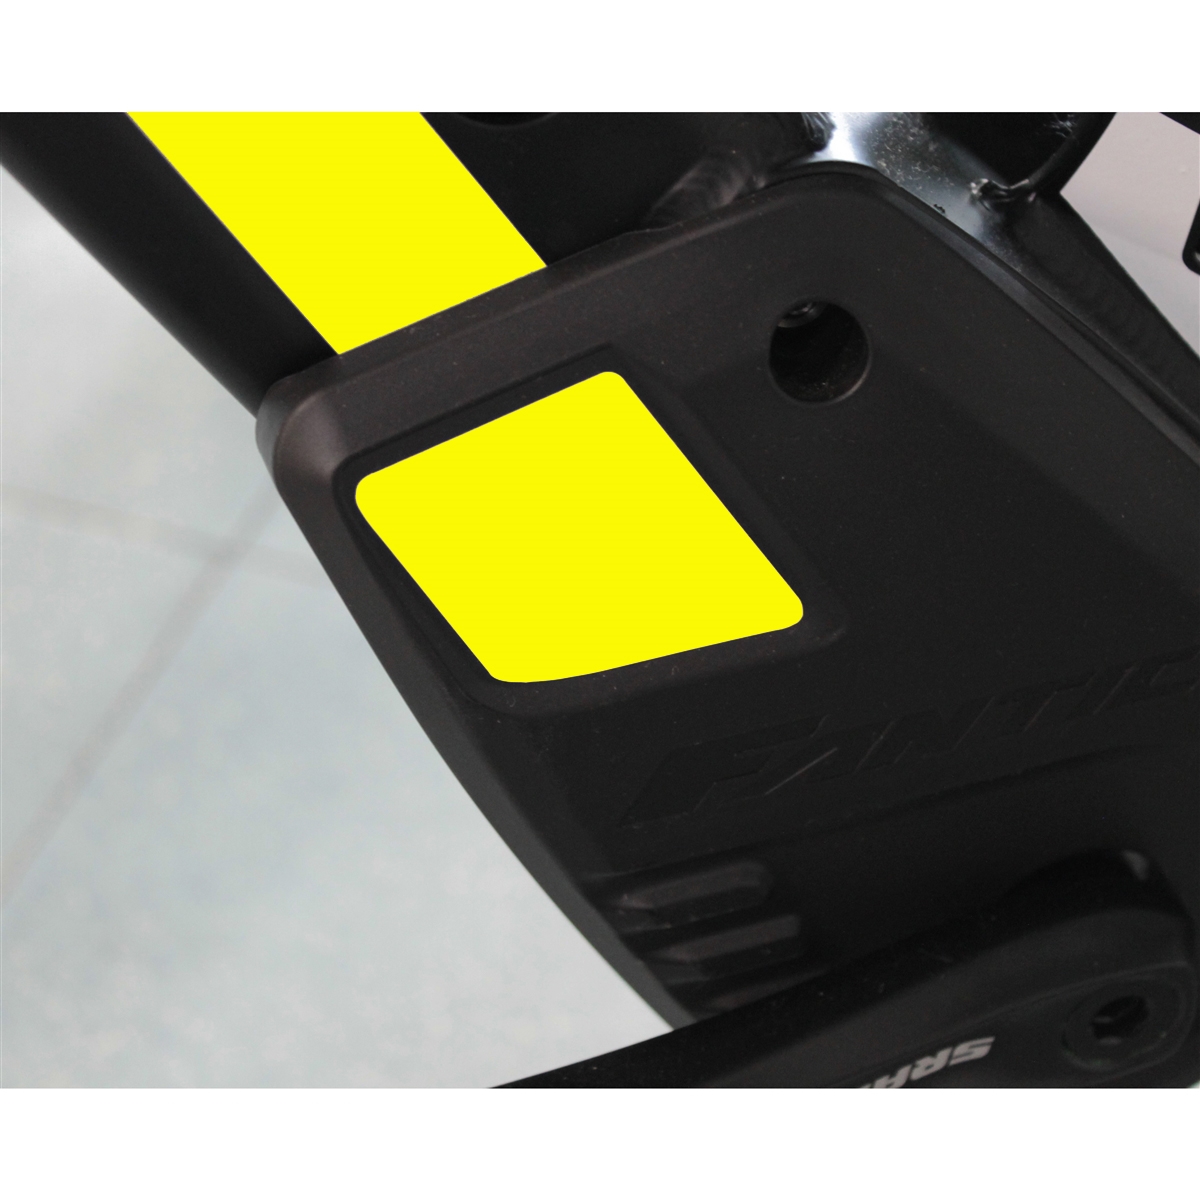 Adhesivo de repuesto para Integra carter amarillo fluo